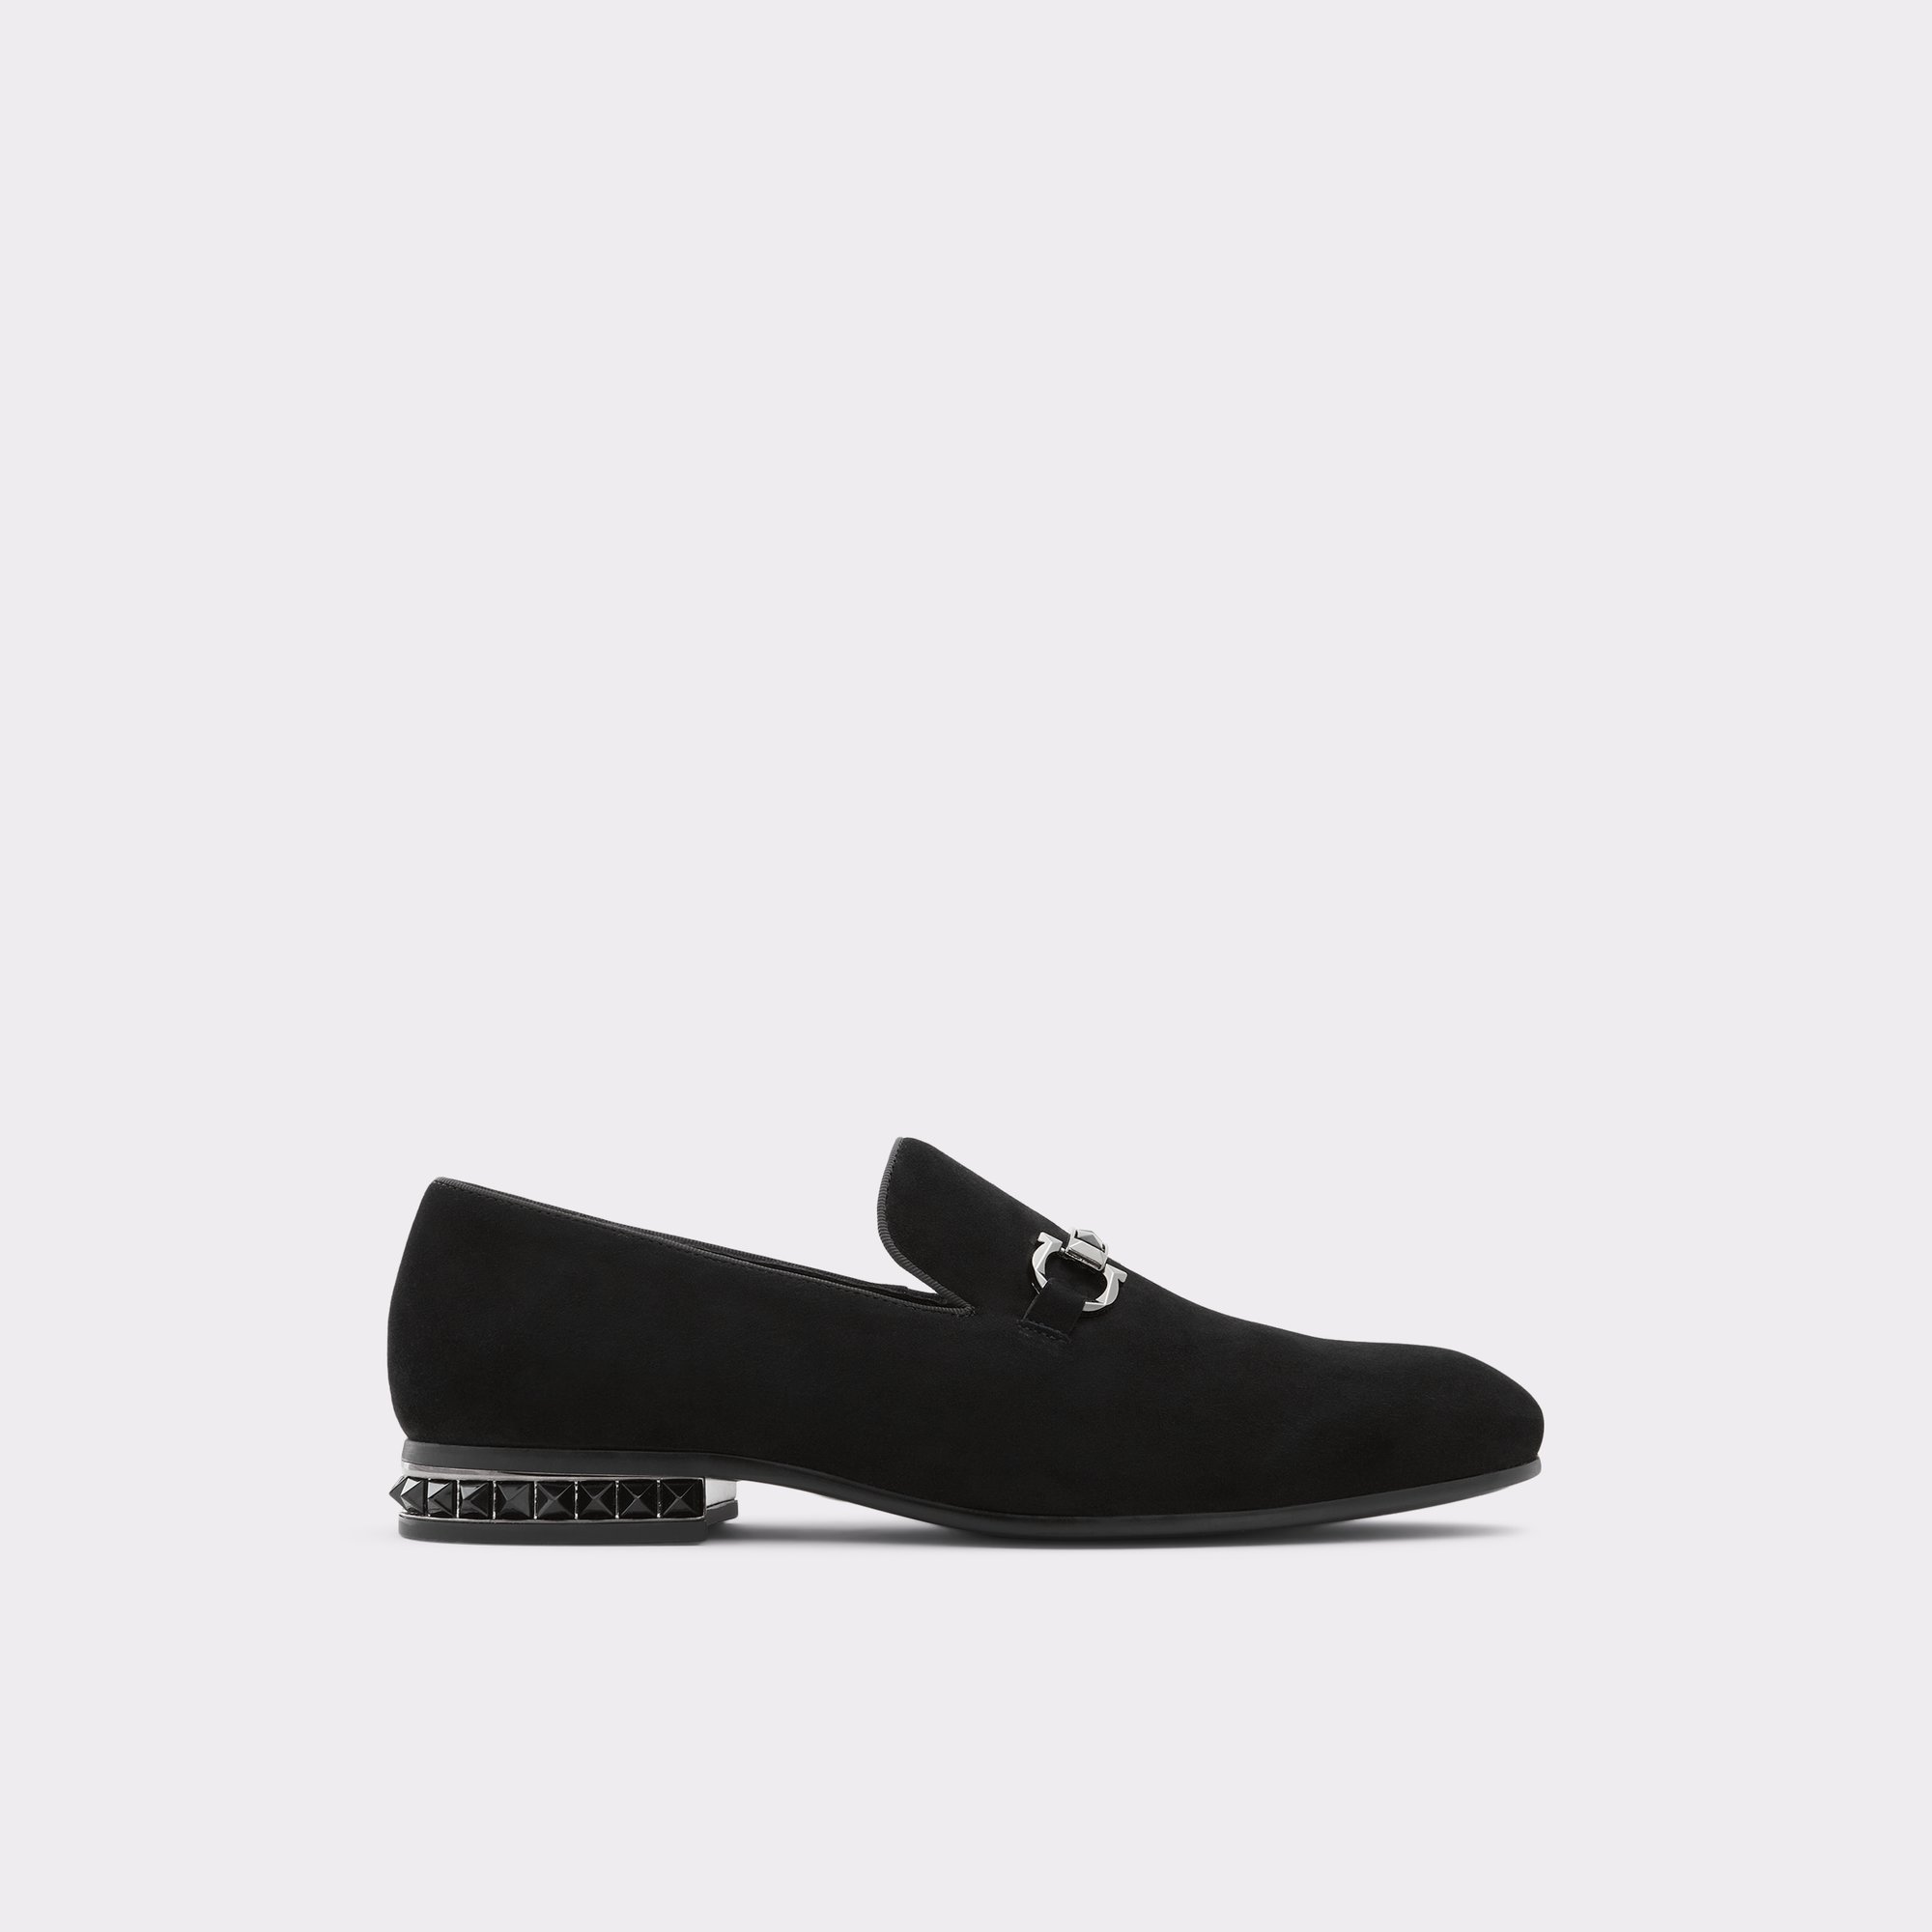 Bowtie Black Synthetic Suede Men's Dress Shoes | ALDO US